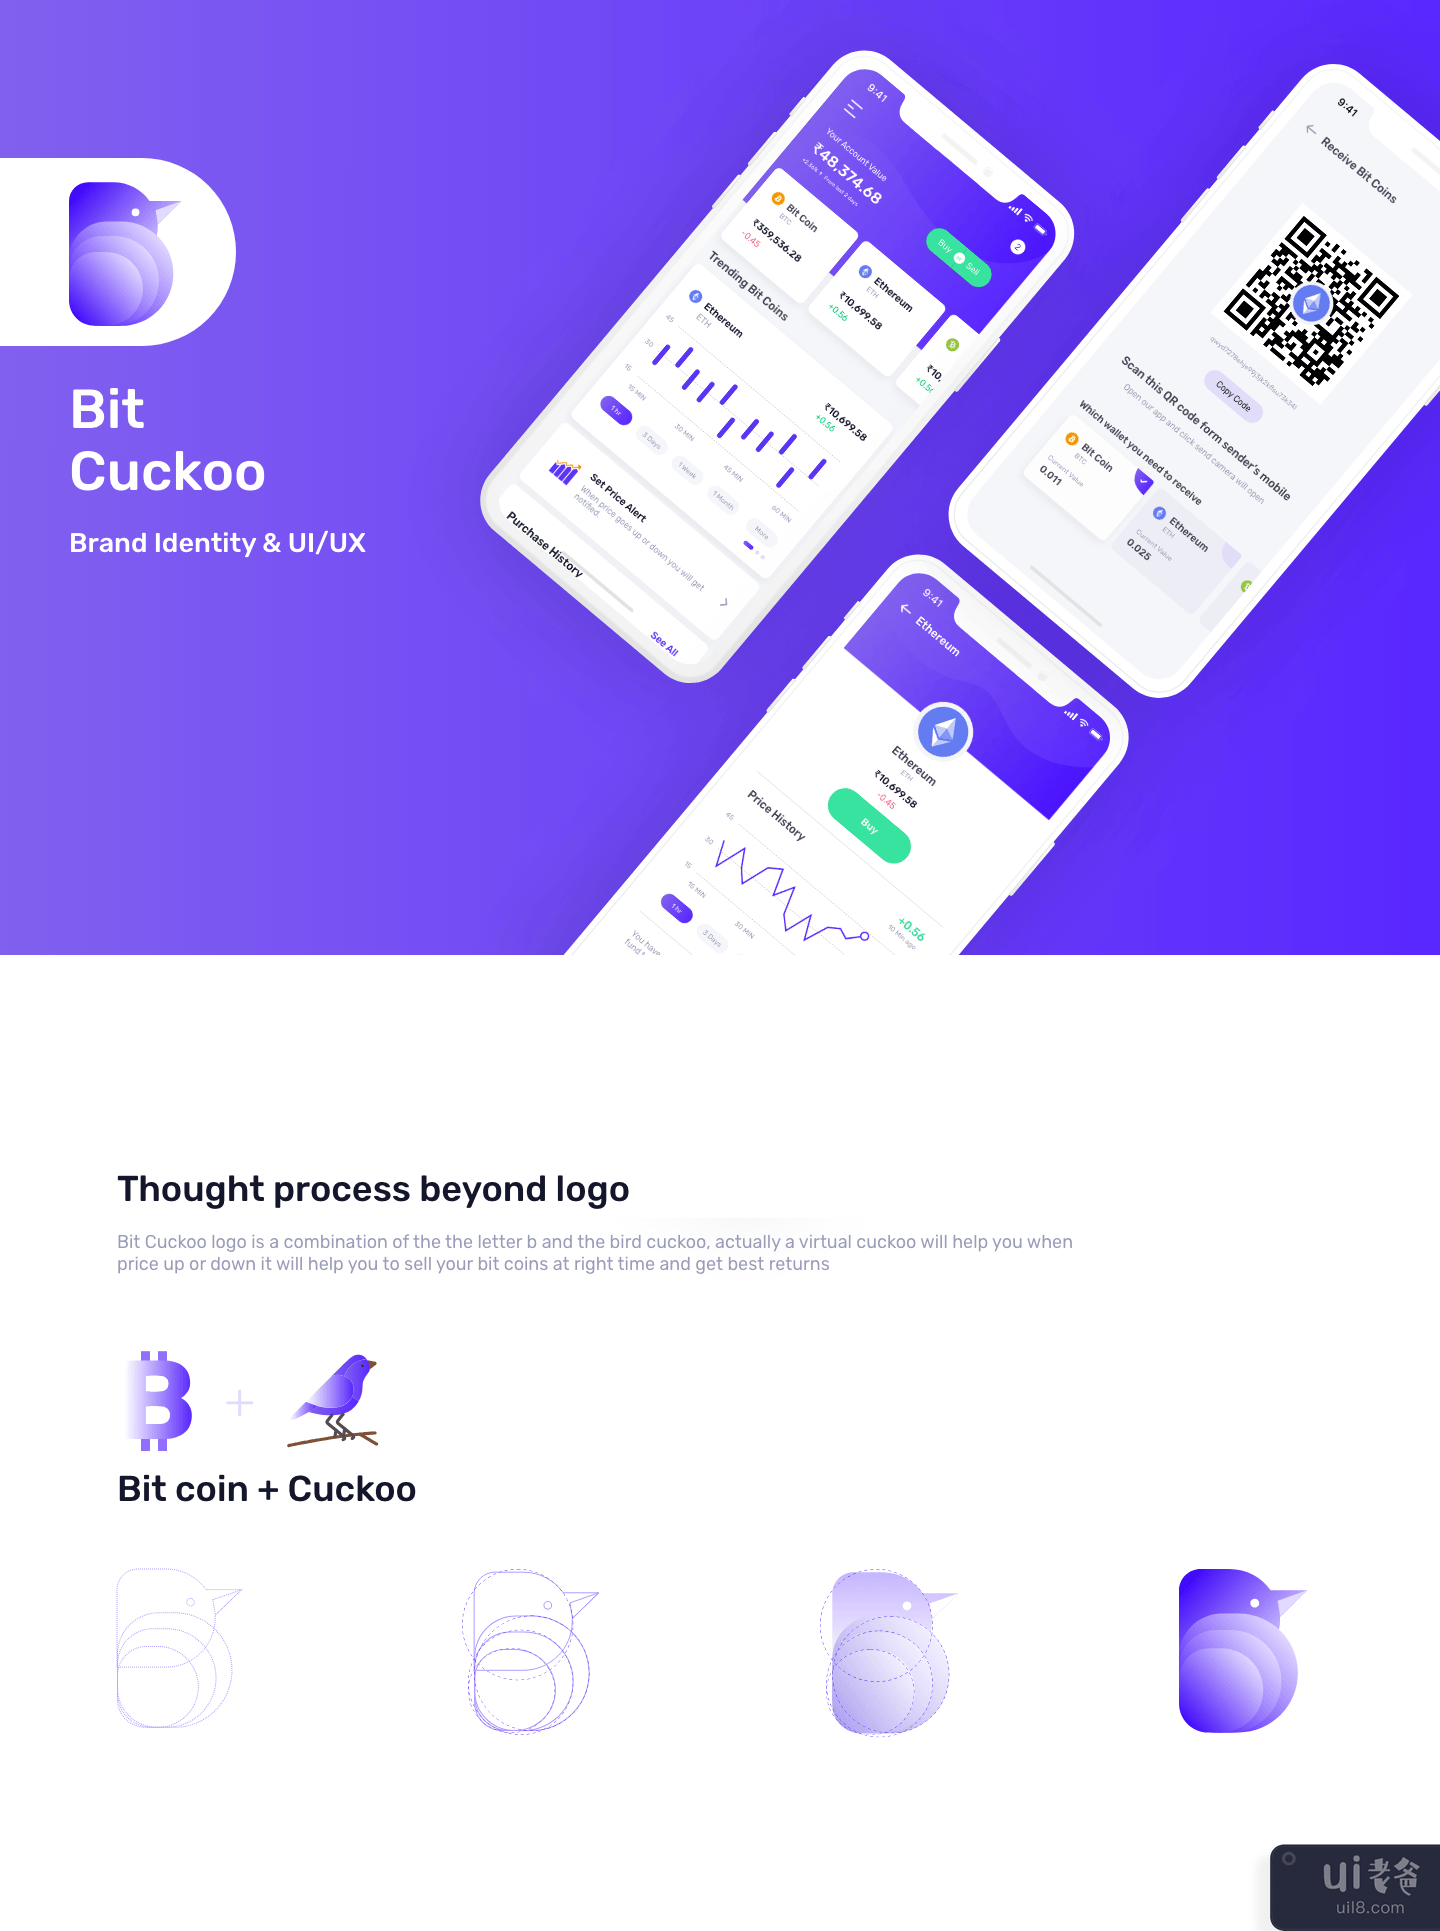 比特币应用程序的比特杜鹃免费 ui 套件(Bit cuckoo free ui kit for bit coin app)插图